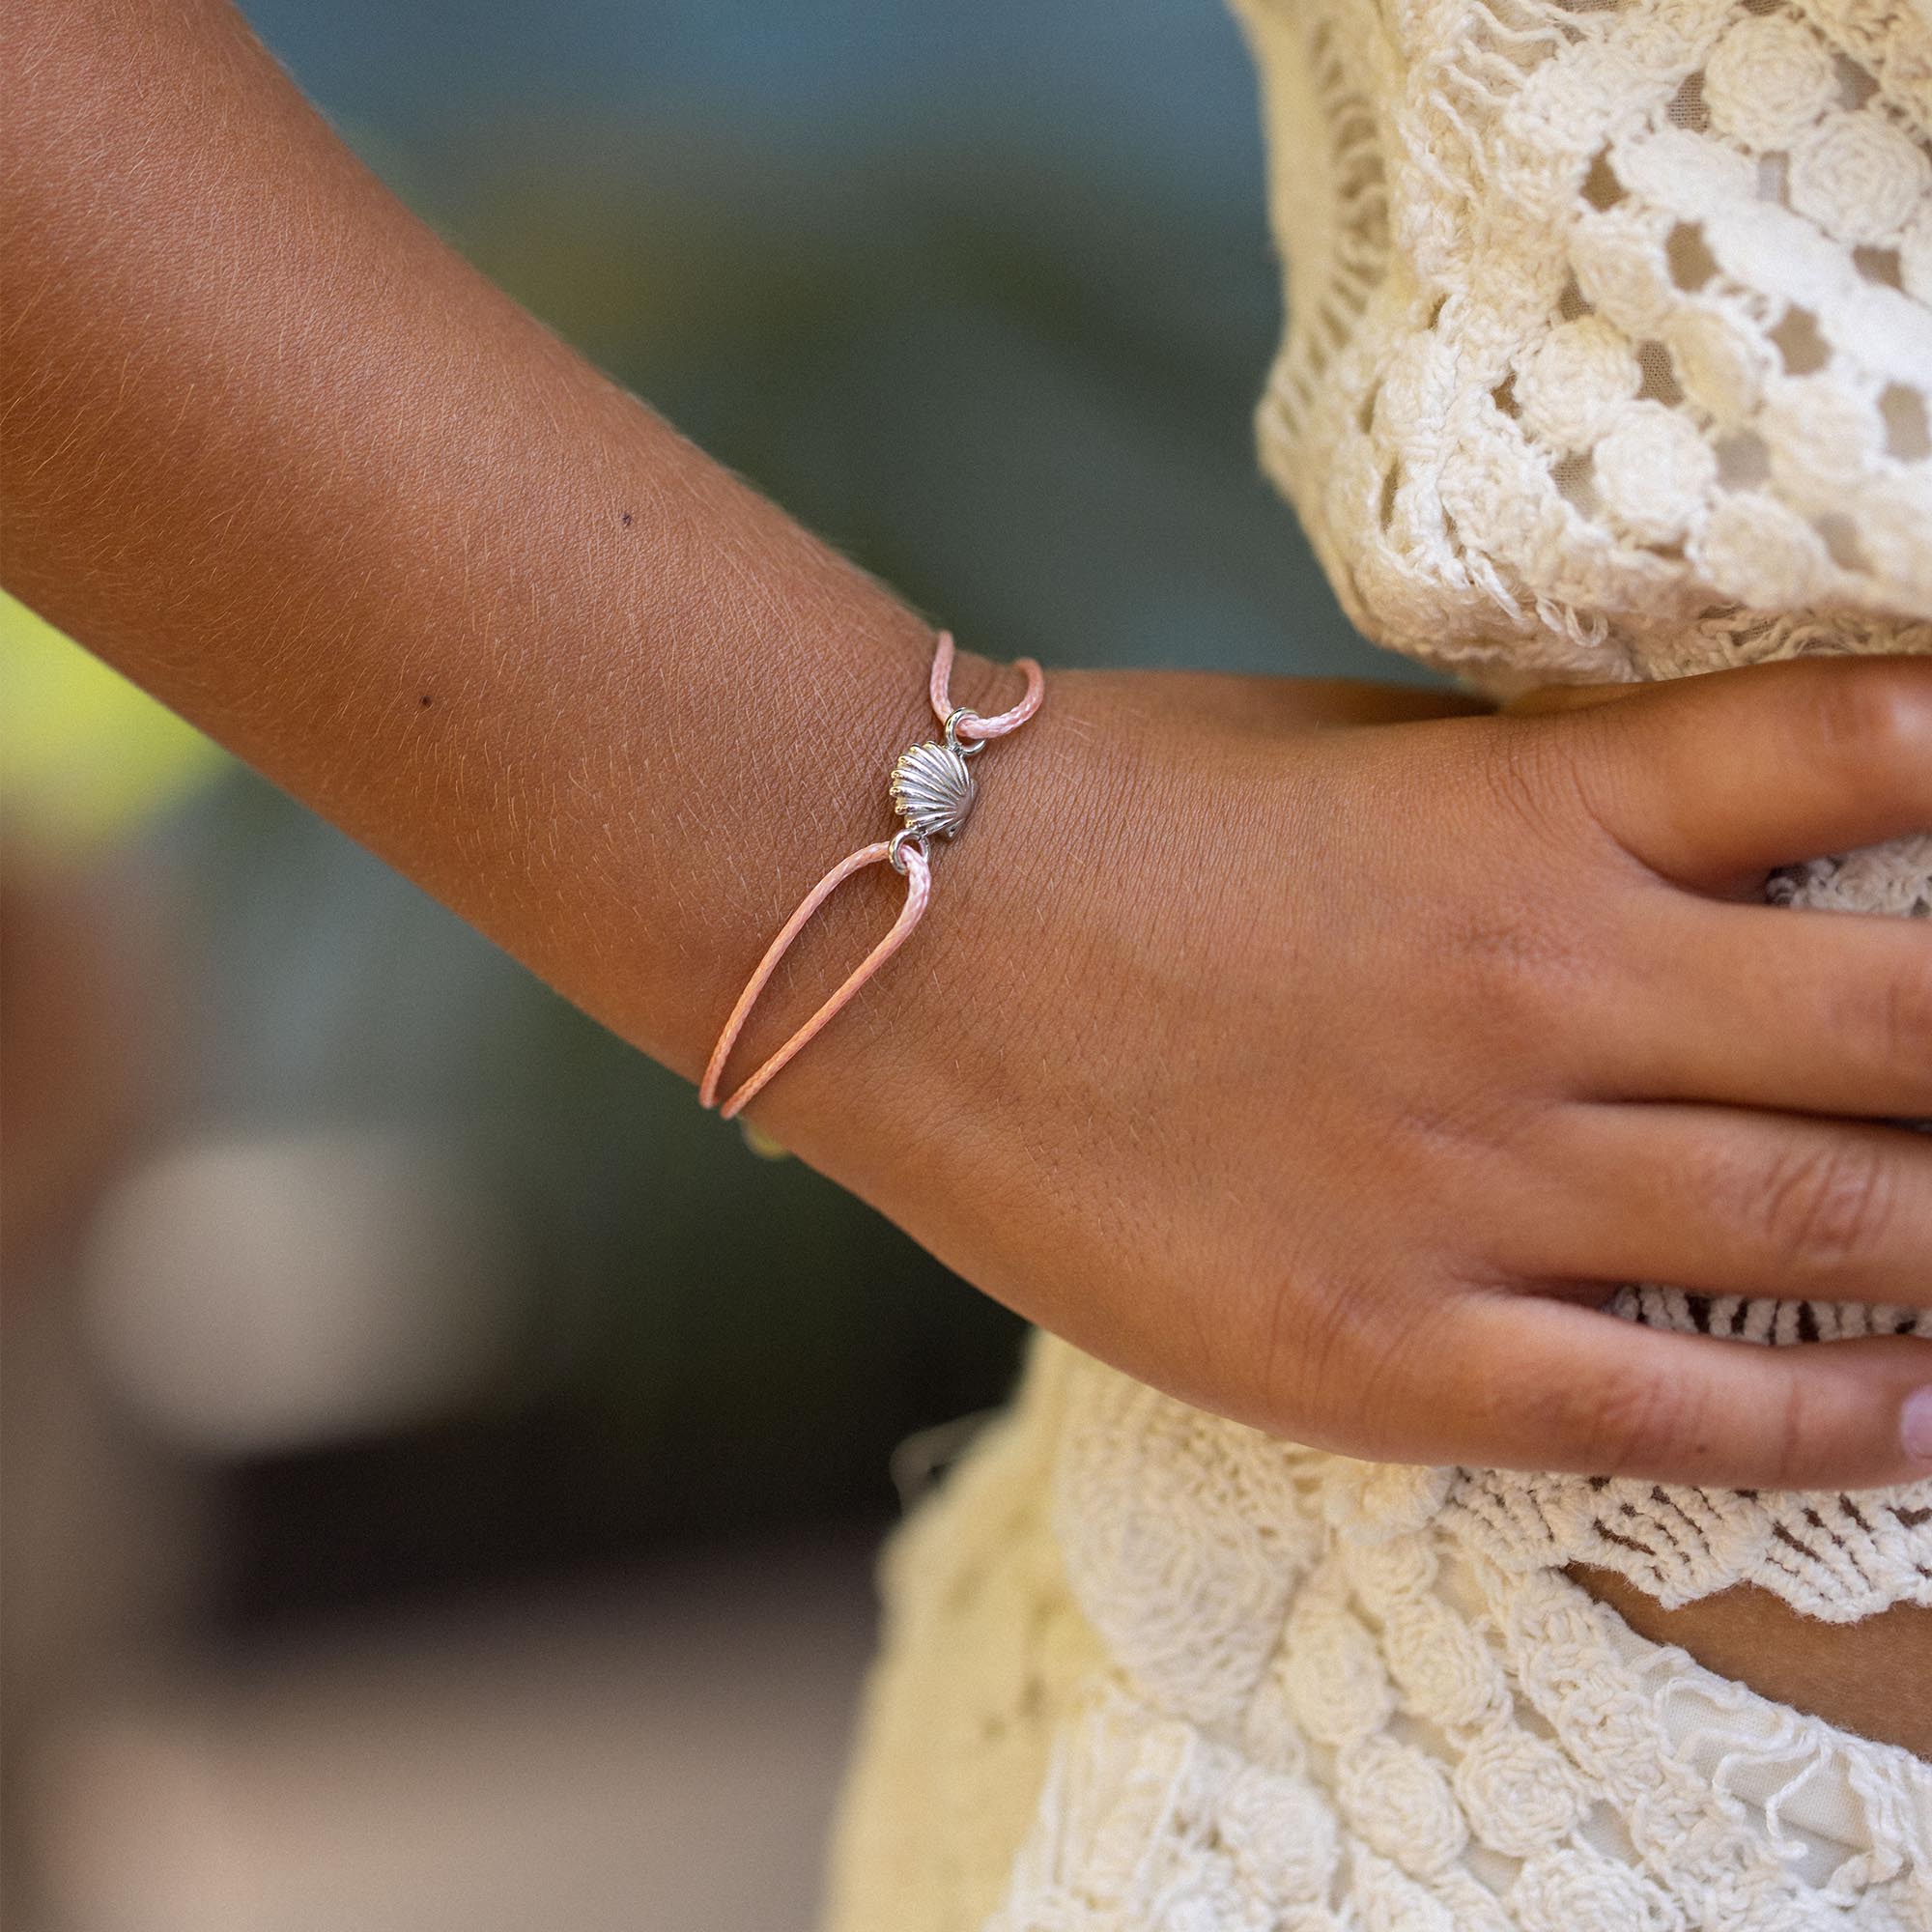 PURELEI® Bracelet Premium (Or), bracelet femme fantaisie en acier inoxydable,  resistant a leau avec logo signature, longueur - Achat / Vente bracelet -  gourmette Purelei Bracelets H6CK PURELE - Cd